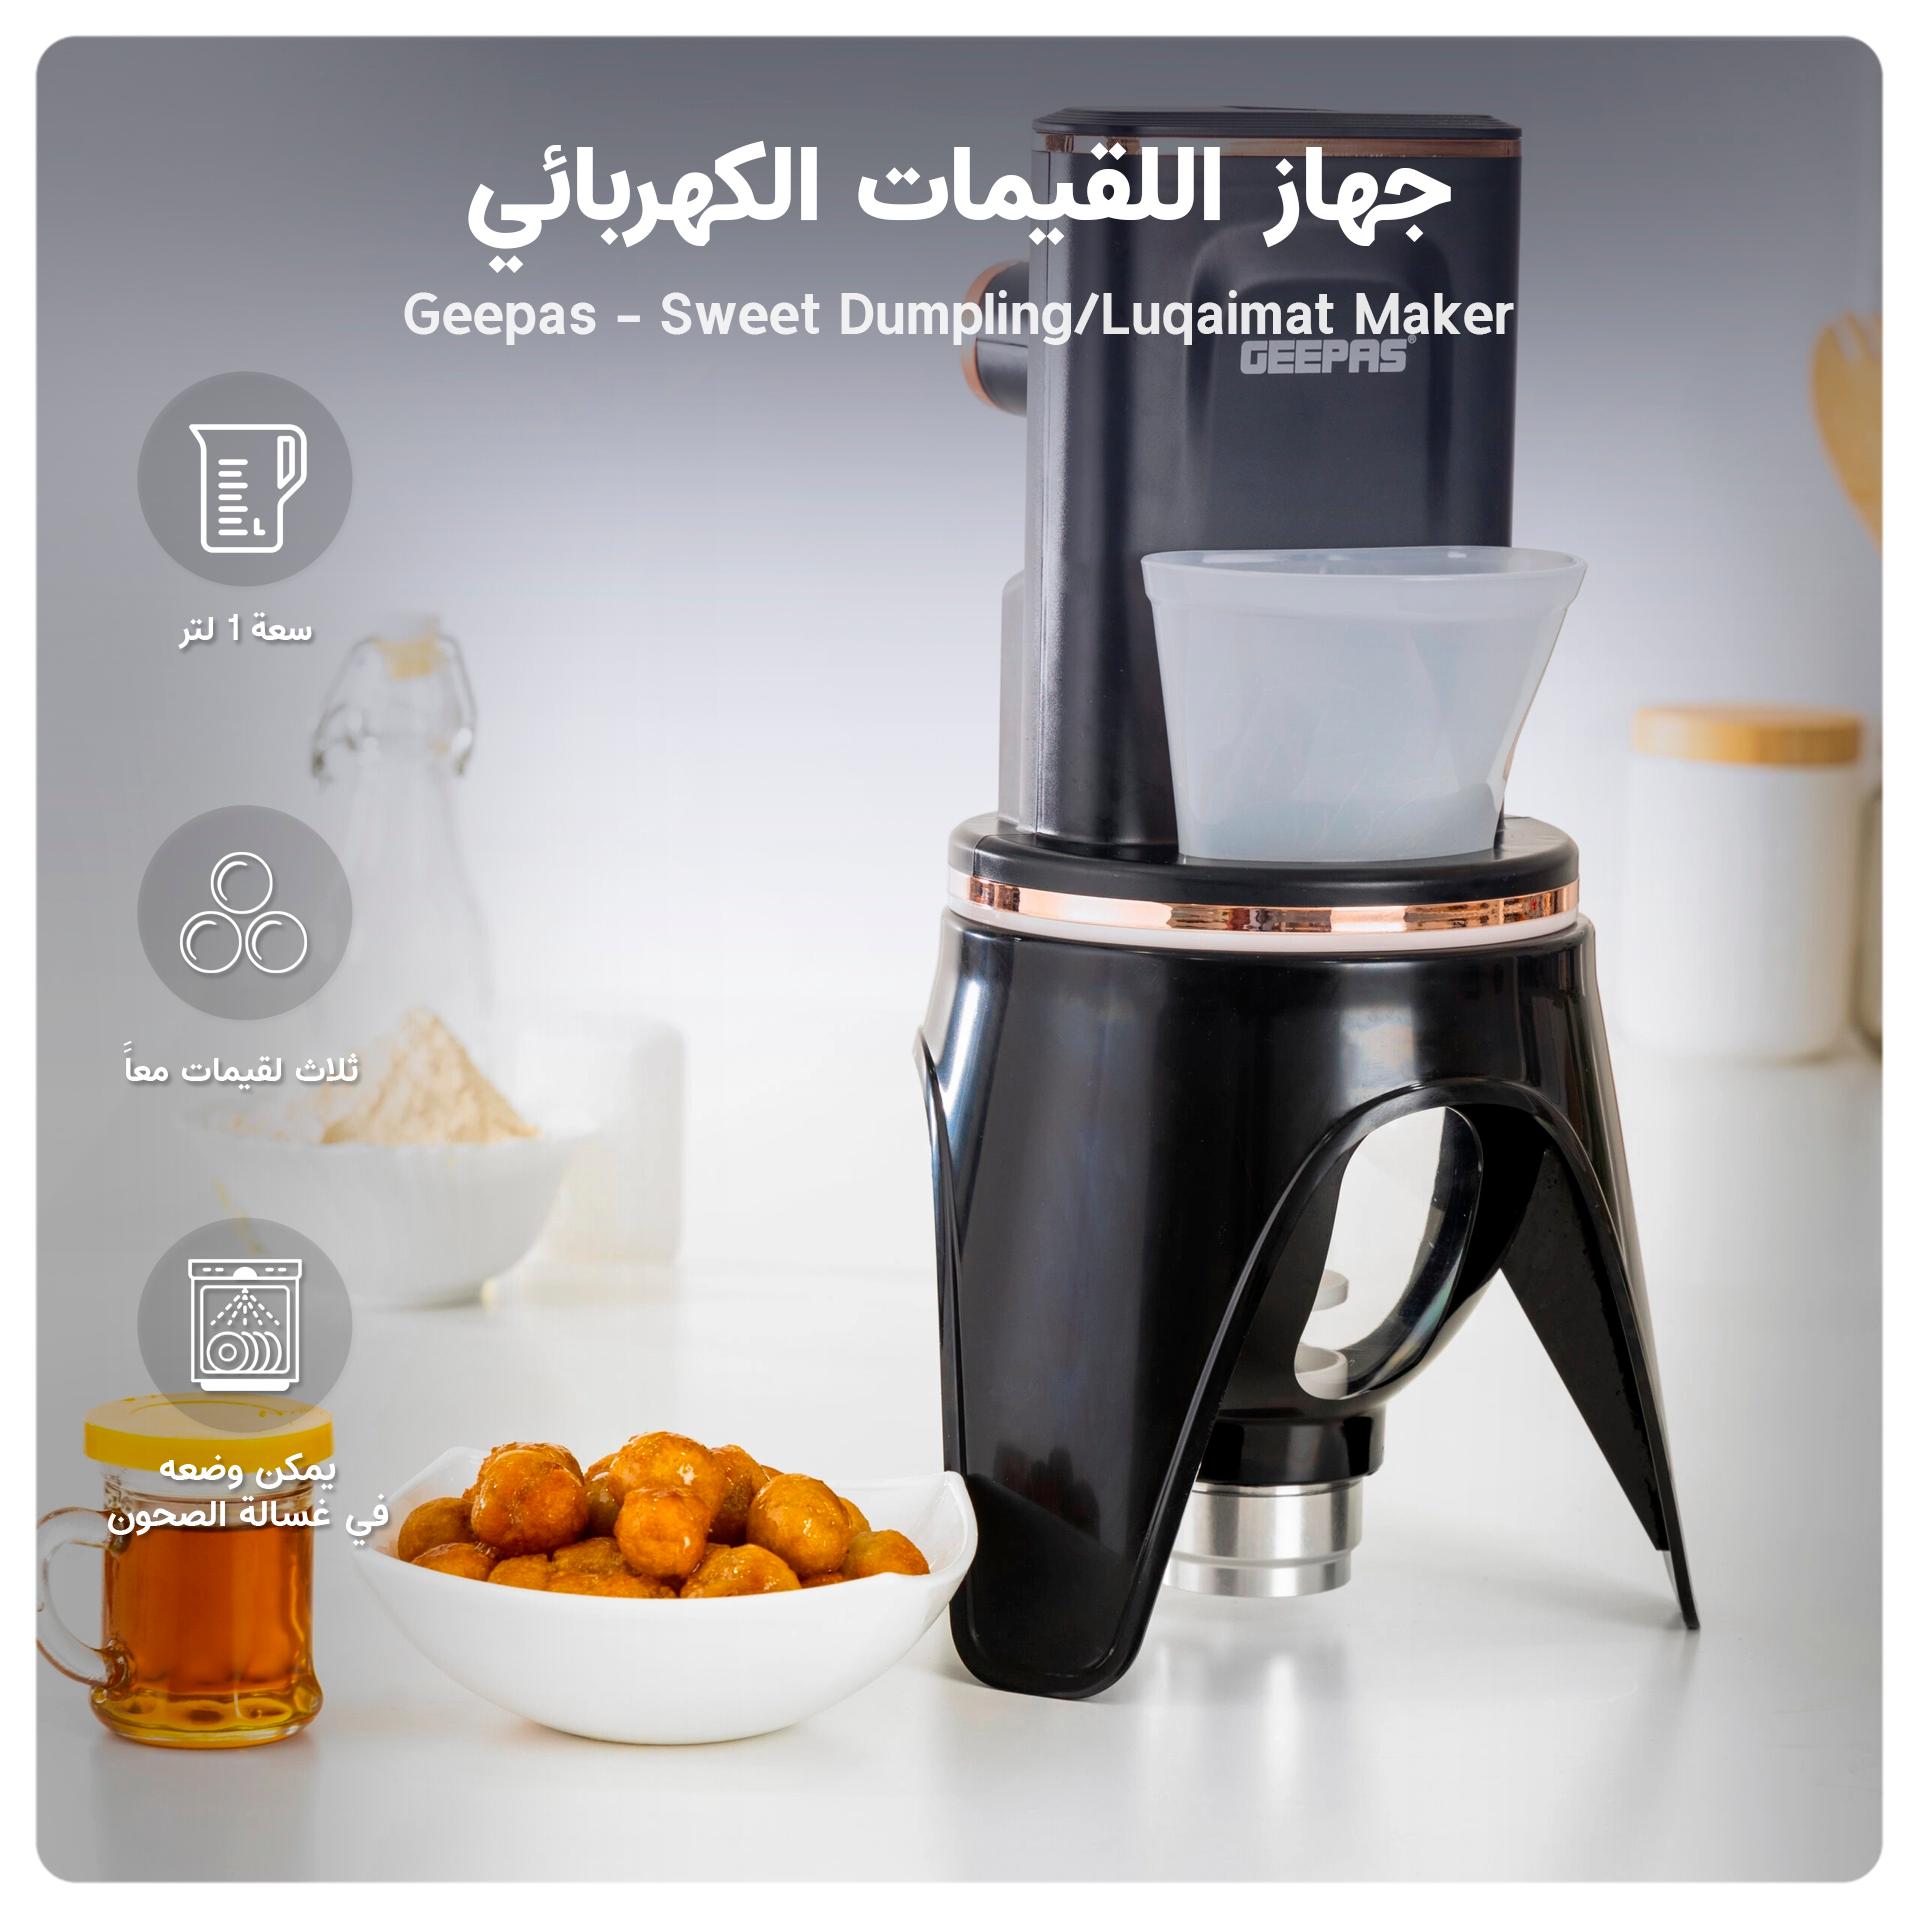 جهاز اللقيمات ( صانعة اللقيمات ) الكهربائي بسعة 1 لتر Geepas Sweet Dumpling/Luqaimat Maker